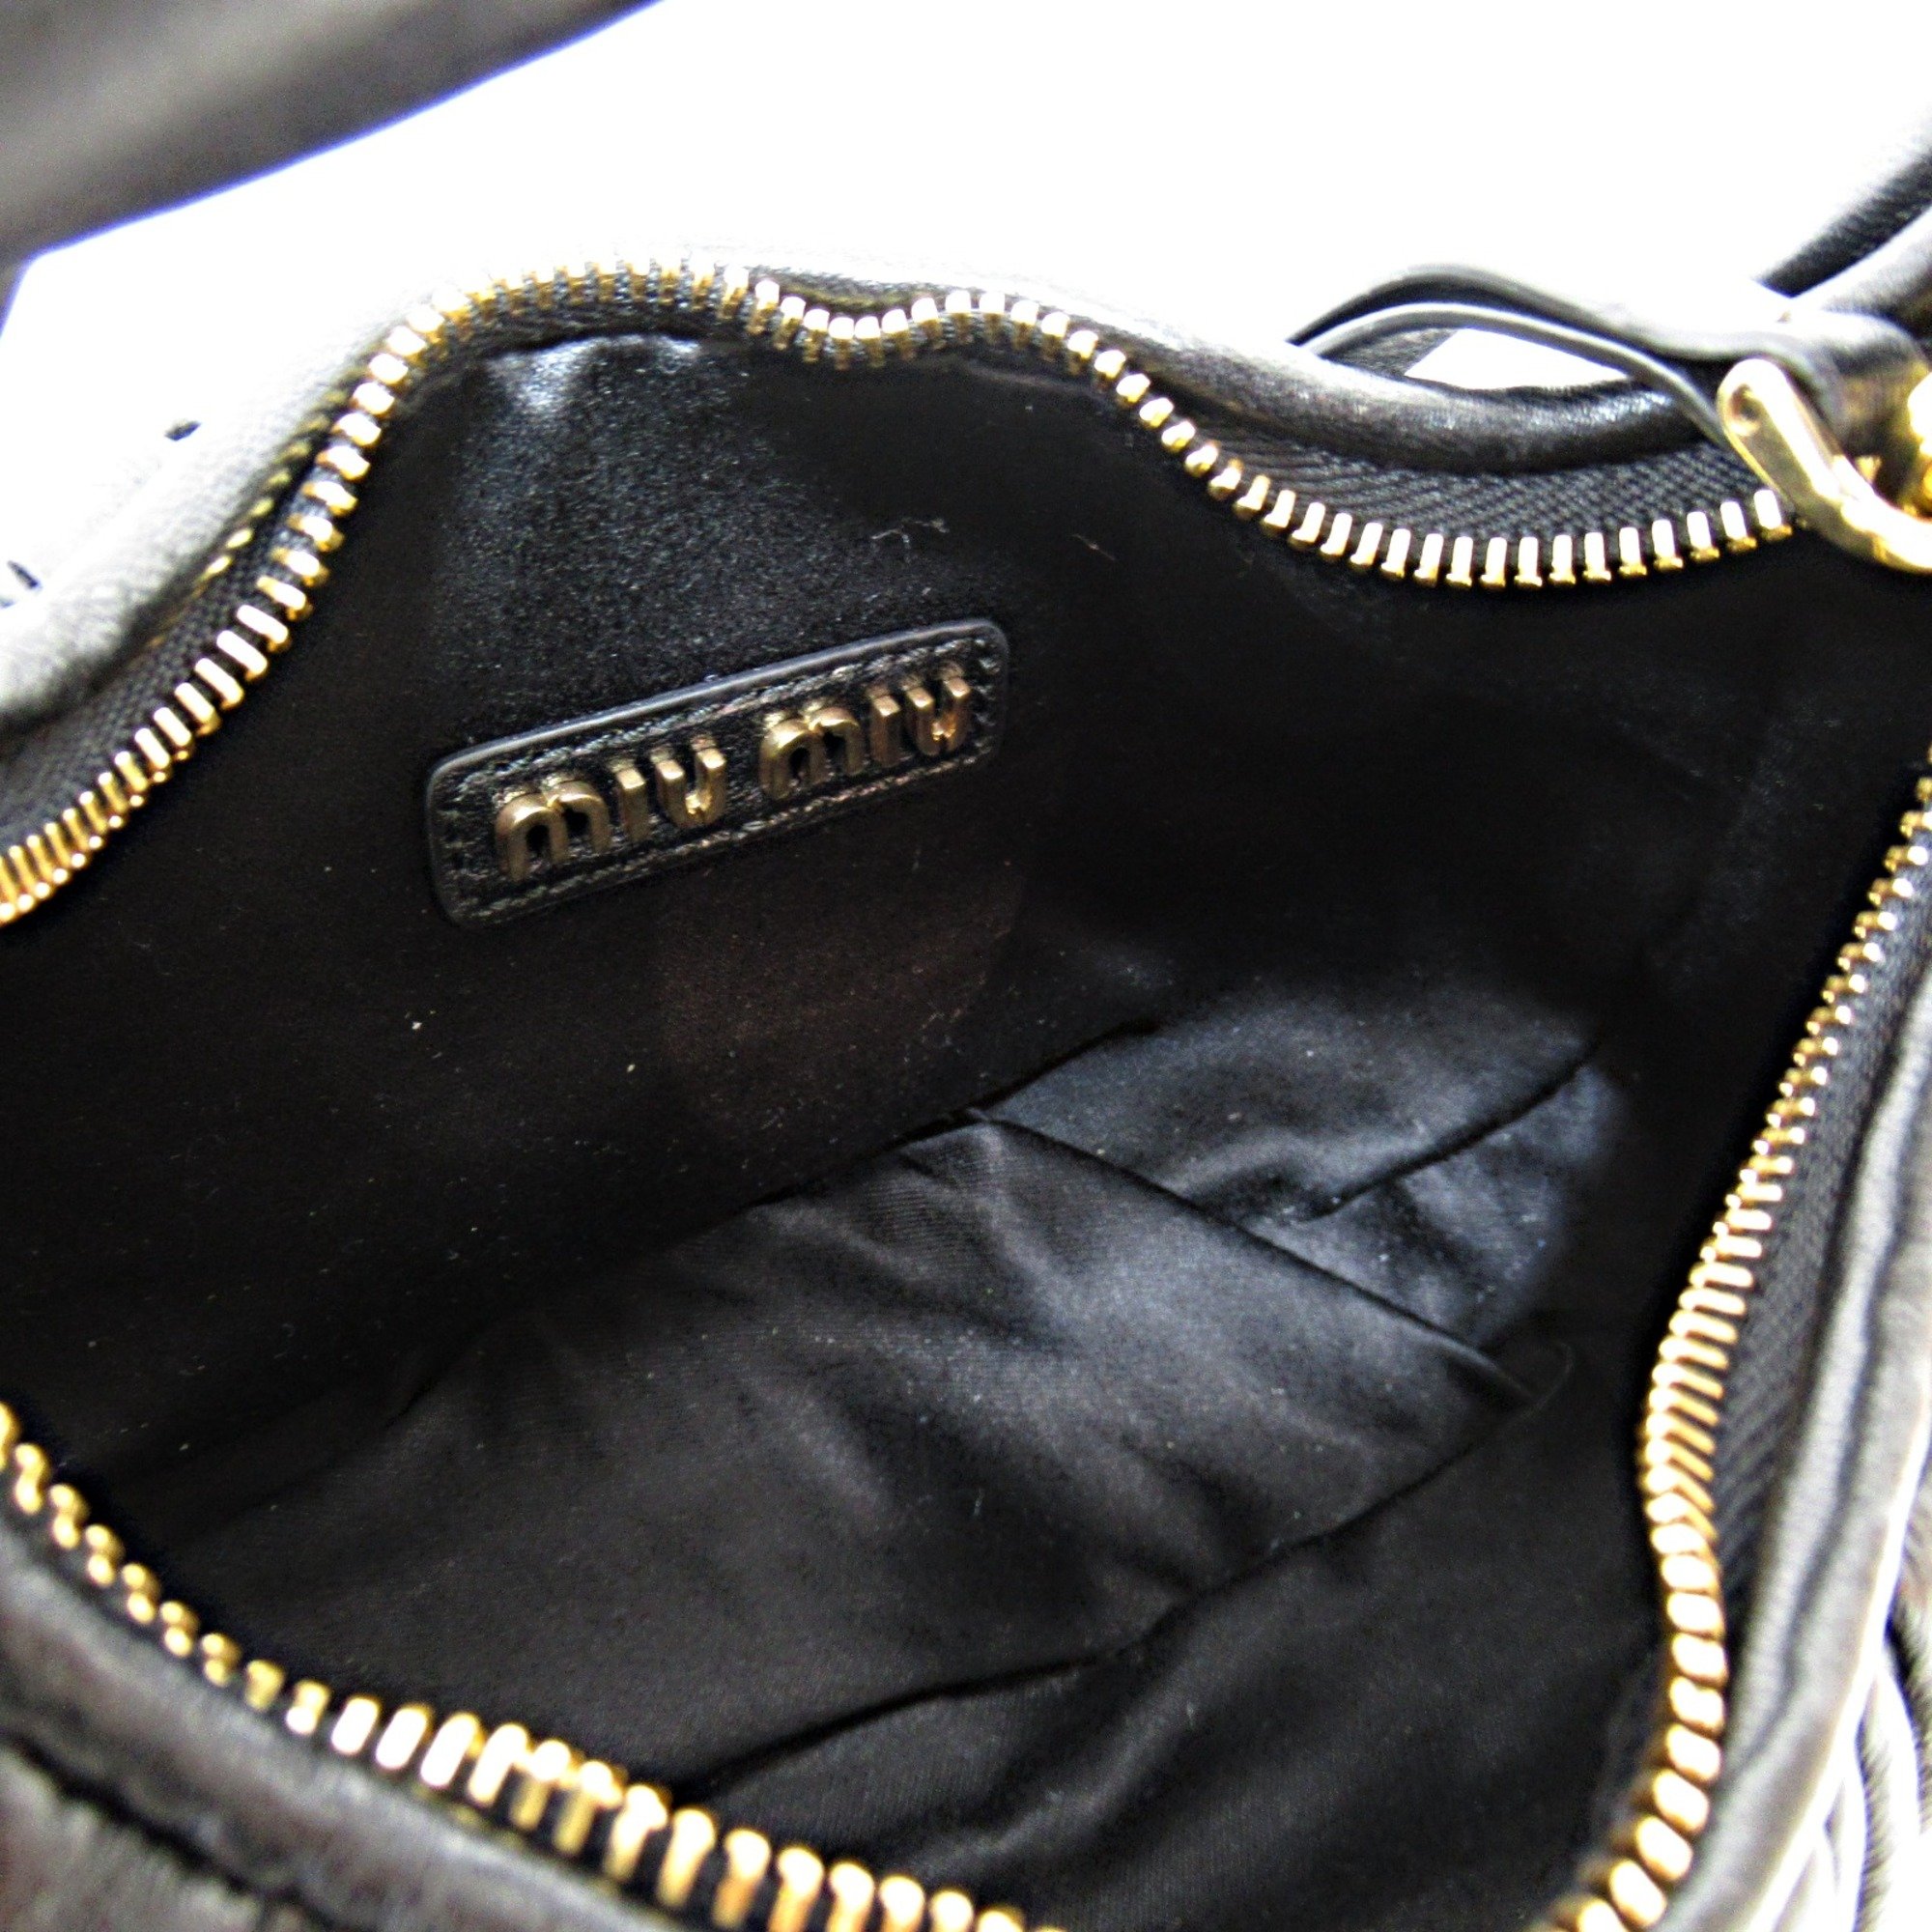 Miu Miu Handbag Shoulder Bag Wonder MatelasseShoulder Bag Black leather 5BP078N88F0002